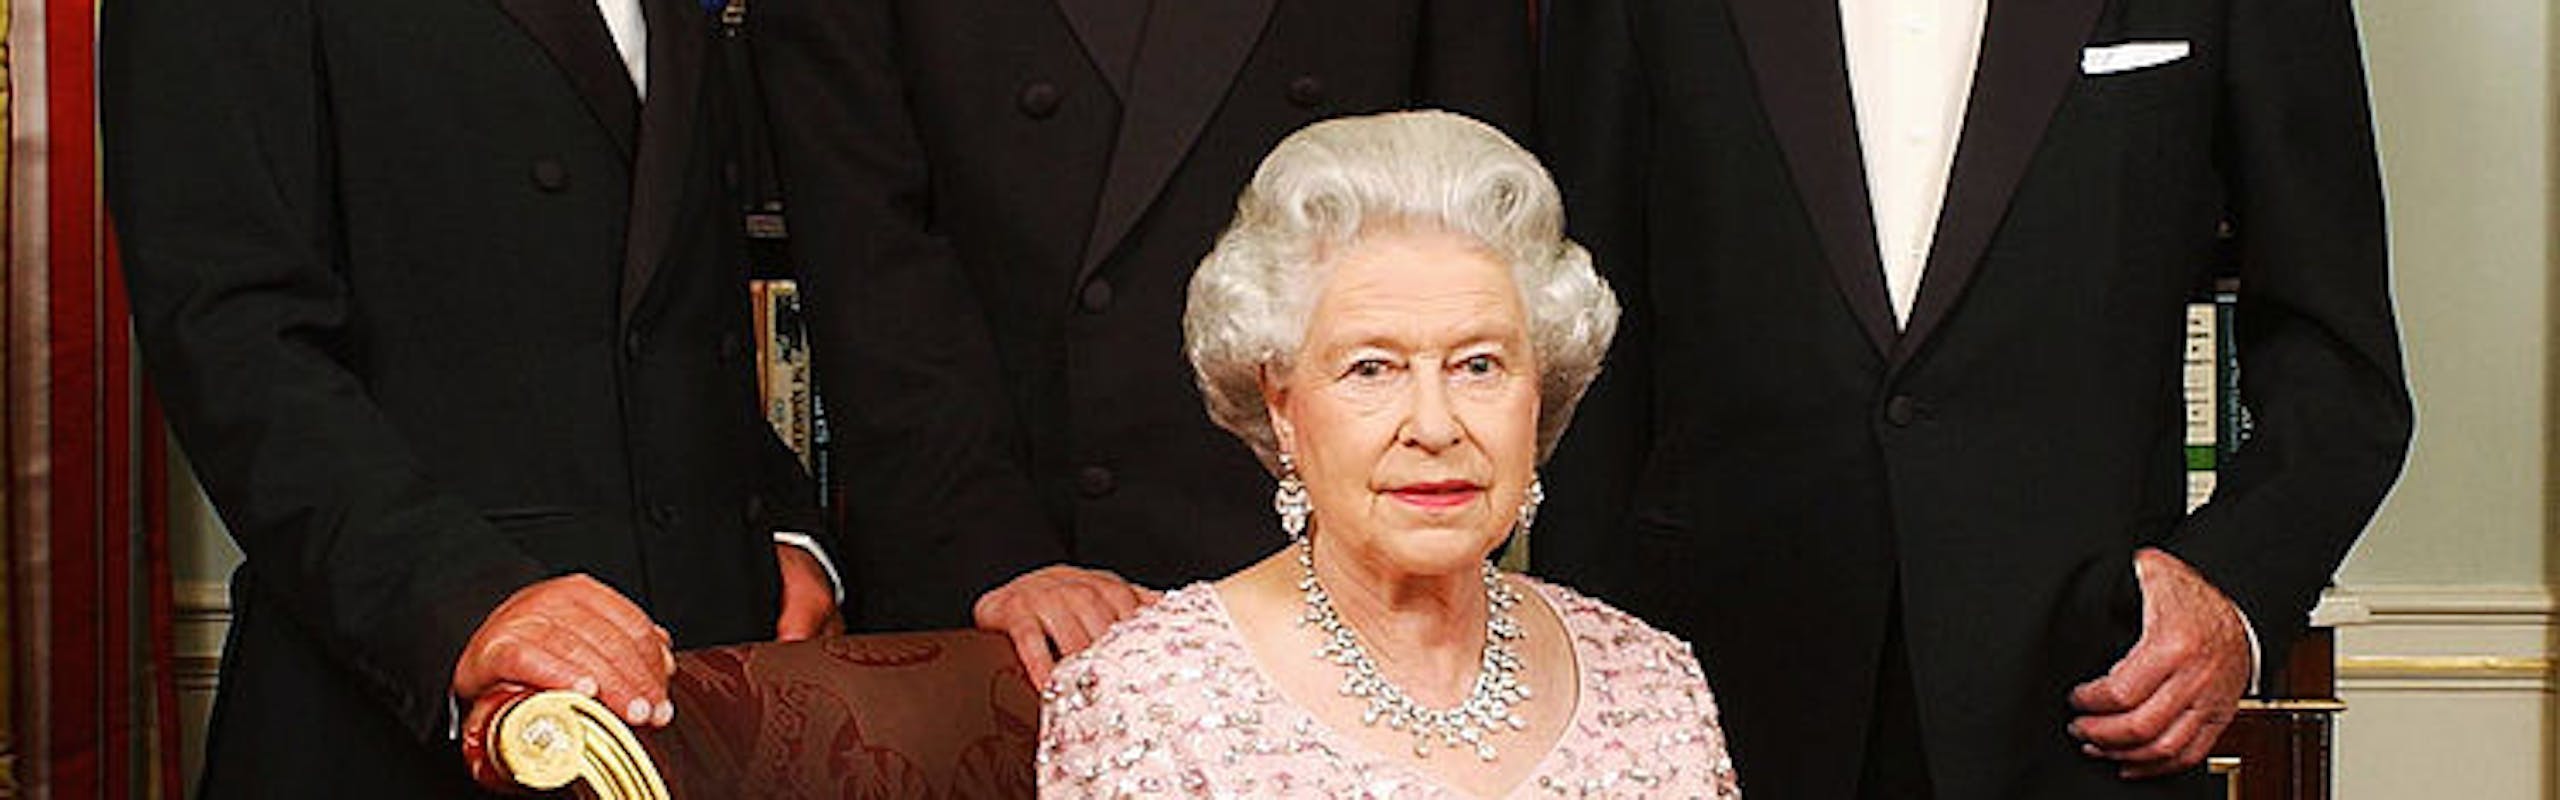 Rainha Elizabeth II ao lado do príncipe Charles (agora Rei Charles III), o príncipe William e a o príncipe Philip (Foto: Getty Images)